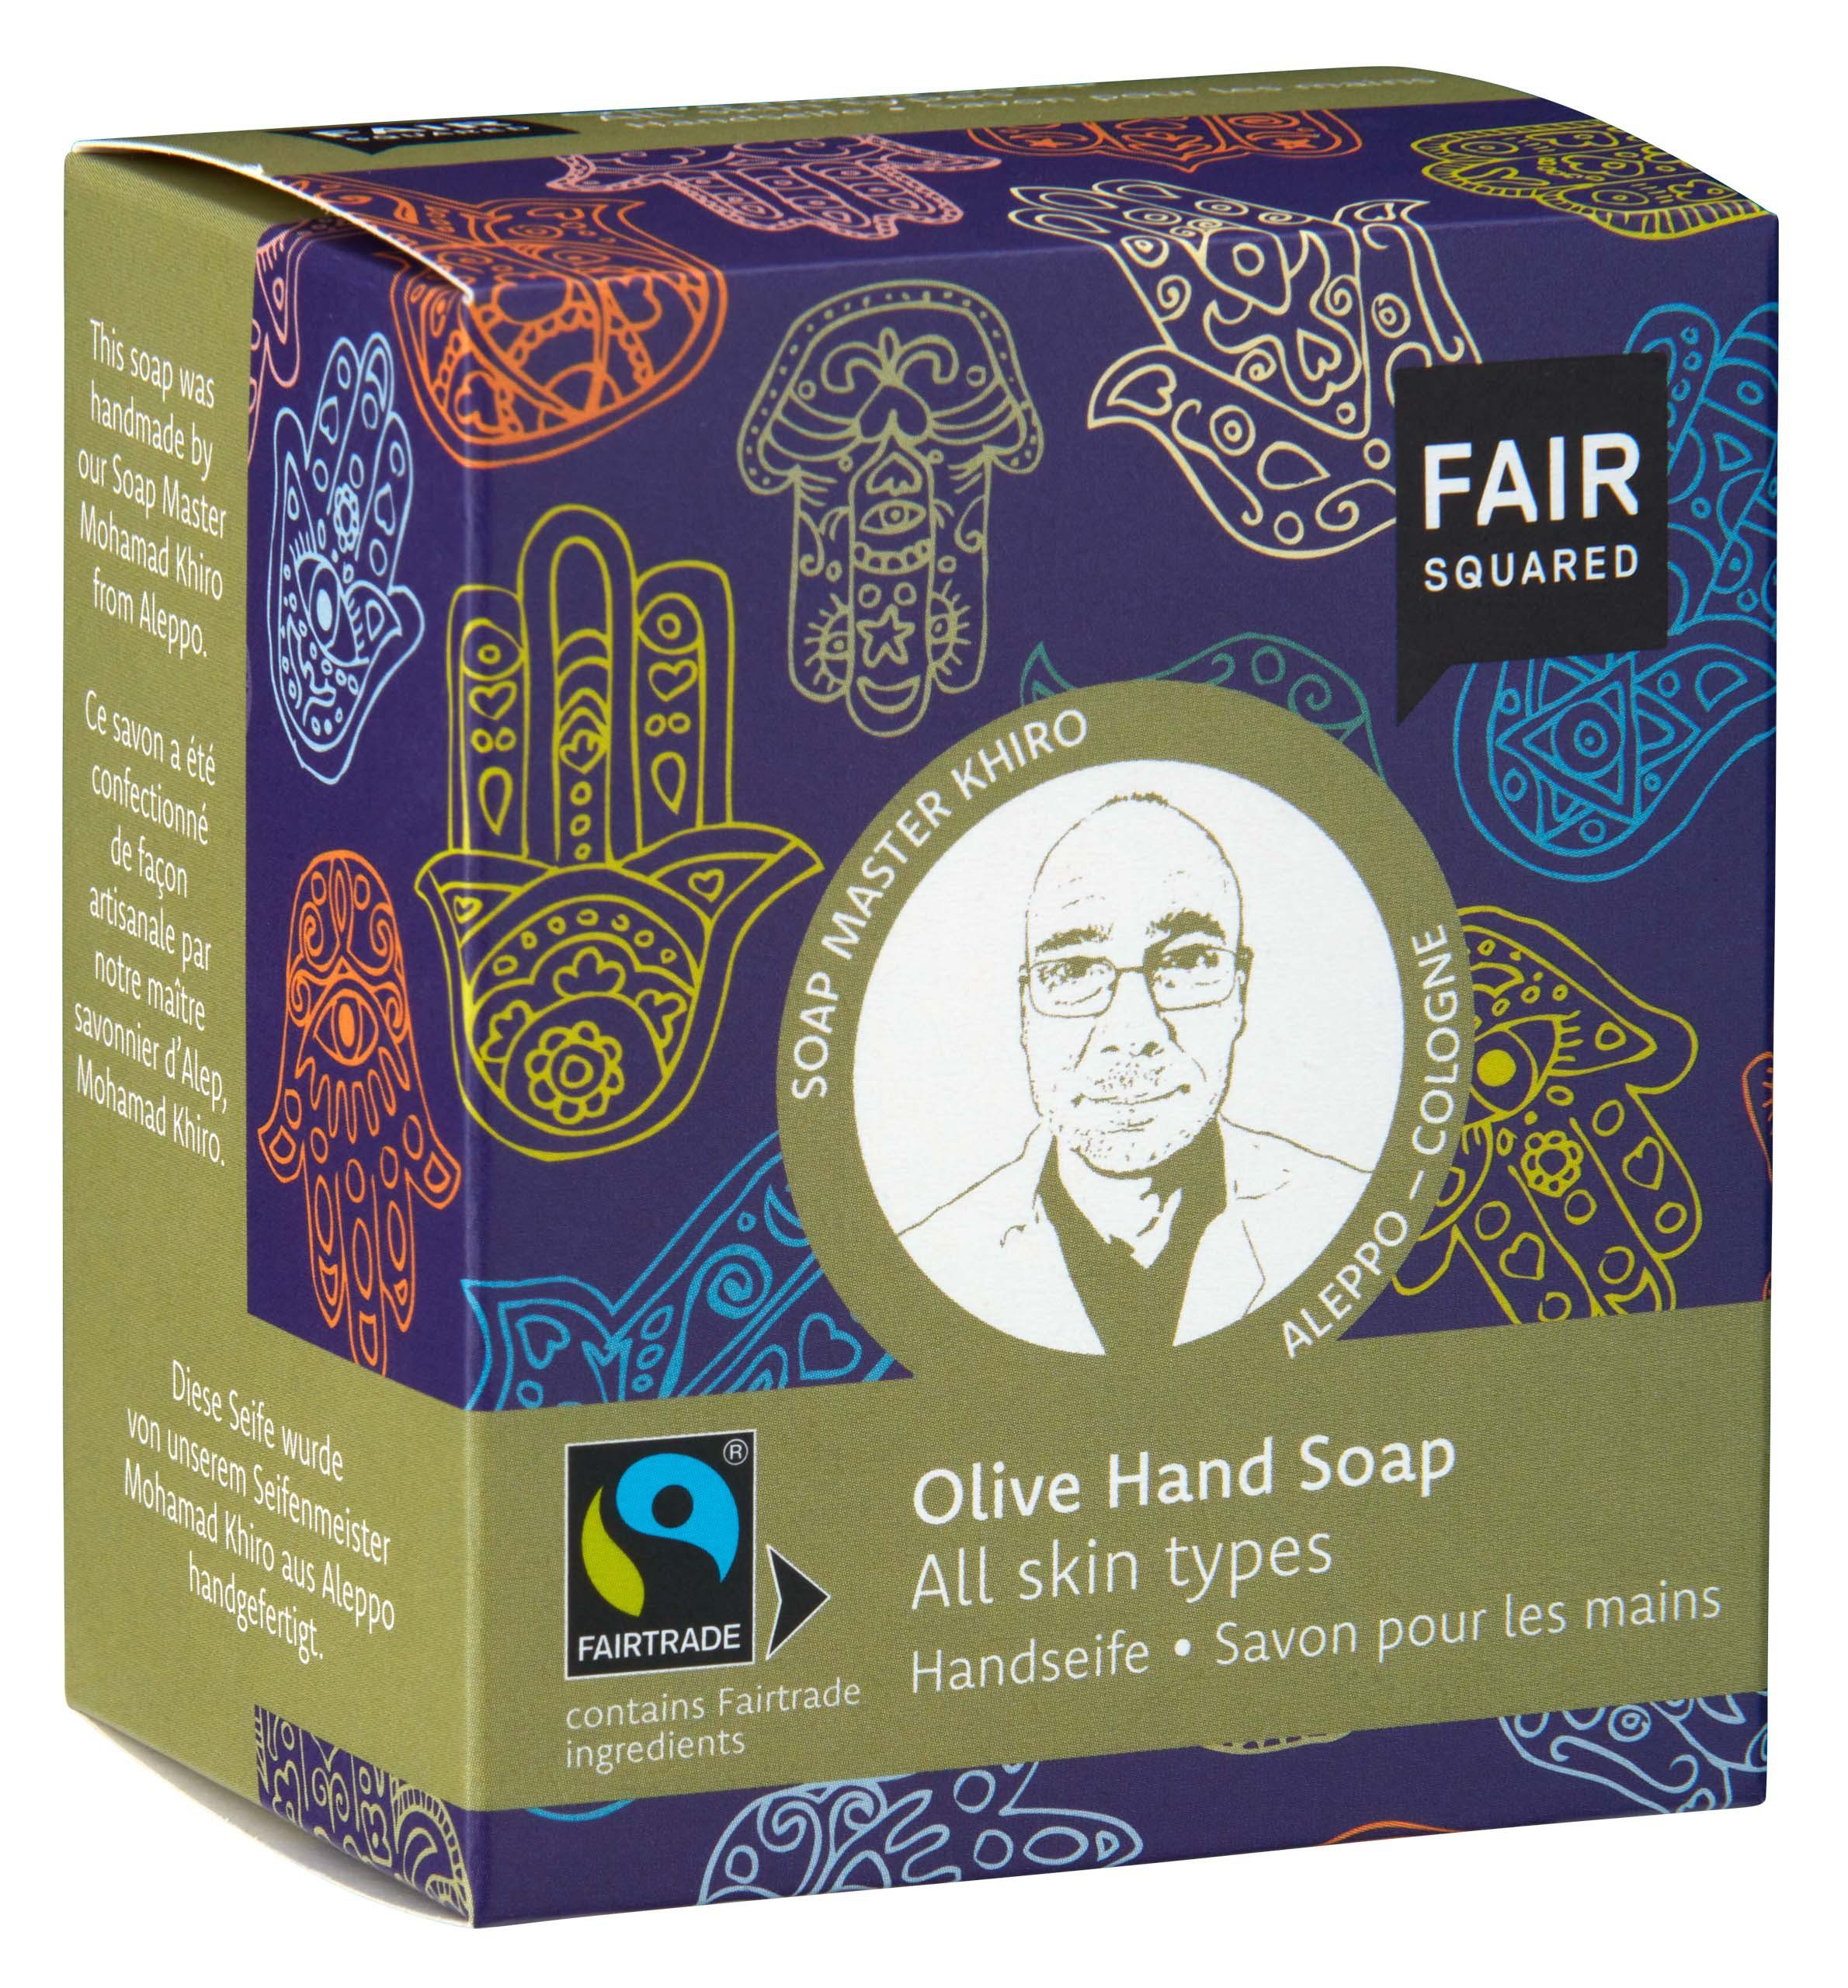 Inhaltsstoffen, Hauttypen alle FAIR für Fair Für 1-tlg., SQUARED mit fair Handseife Olivenöl Squared alle geeignet Handseife mit gehandelten Hauttypen